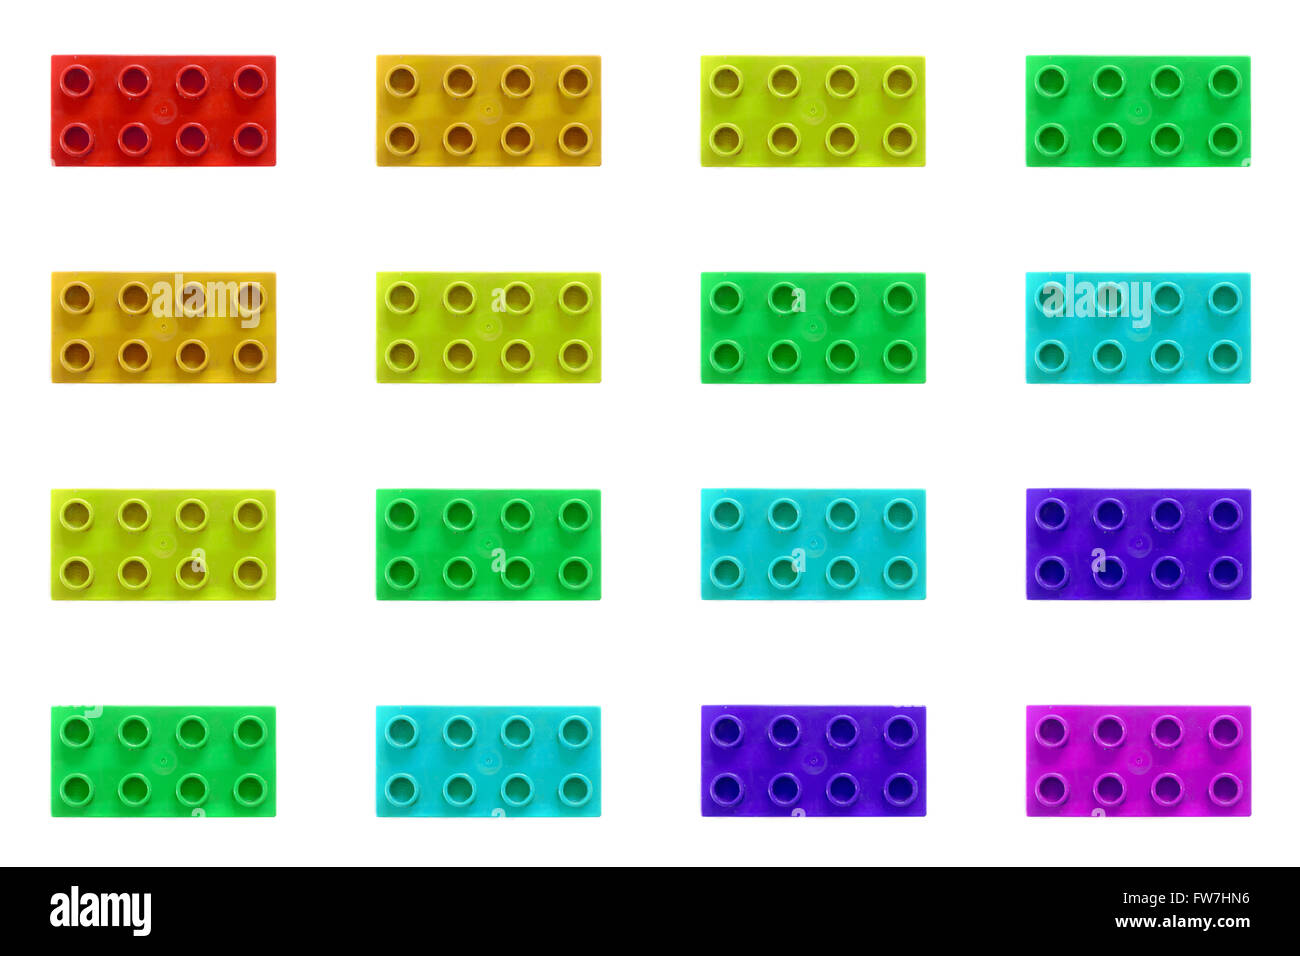 Ein Raster aus verschiedenen bunten Lego-Steinen vor einem weißen  Hintergrund Stockfotografie - Alamy